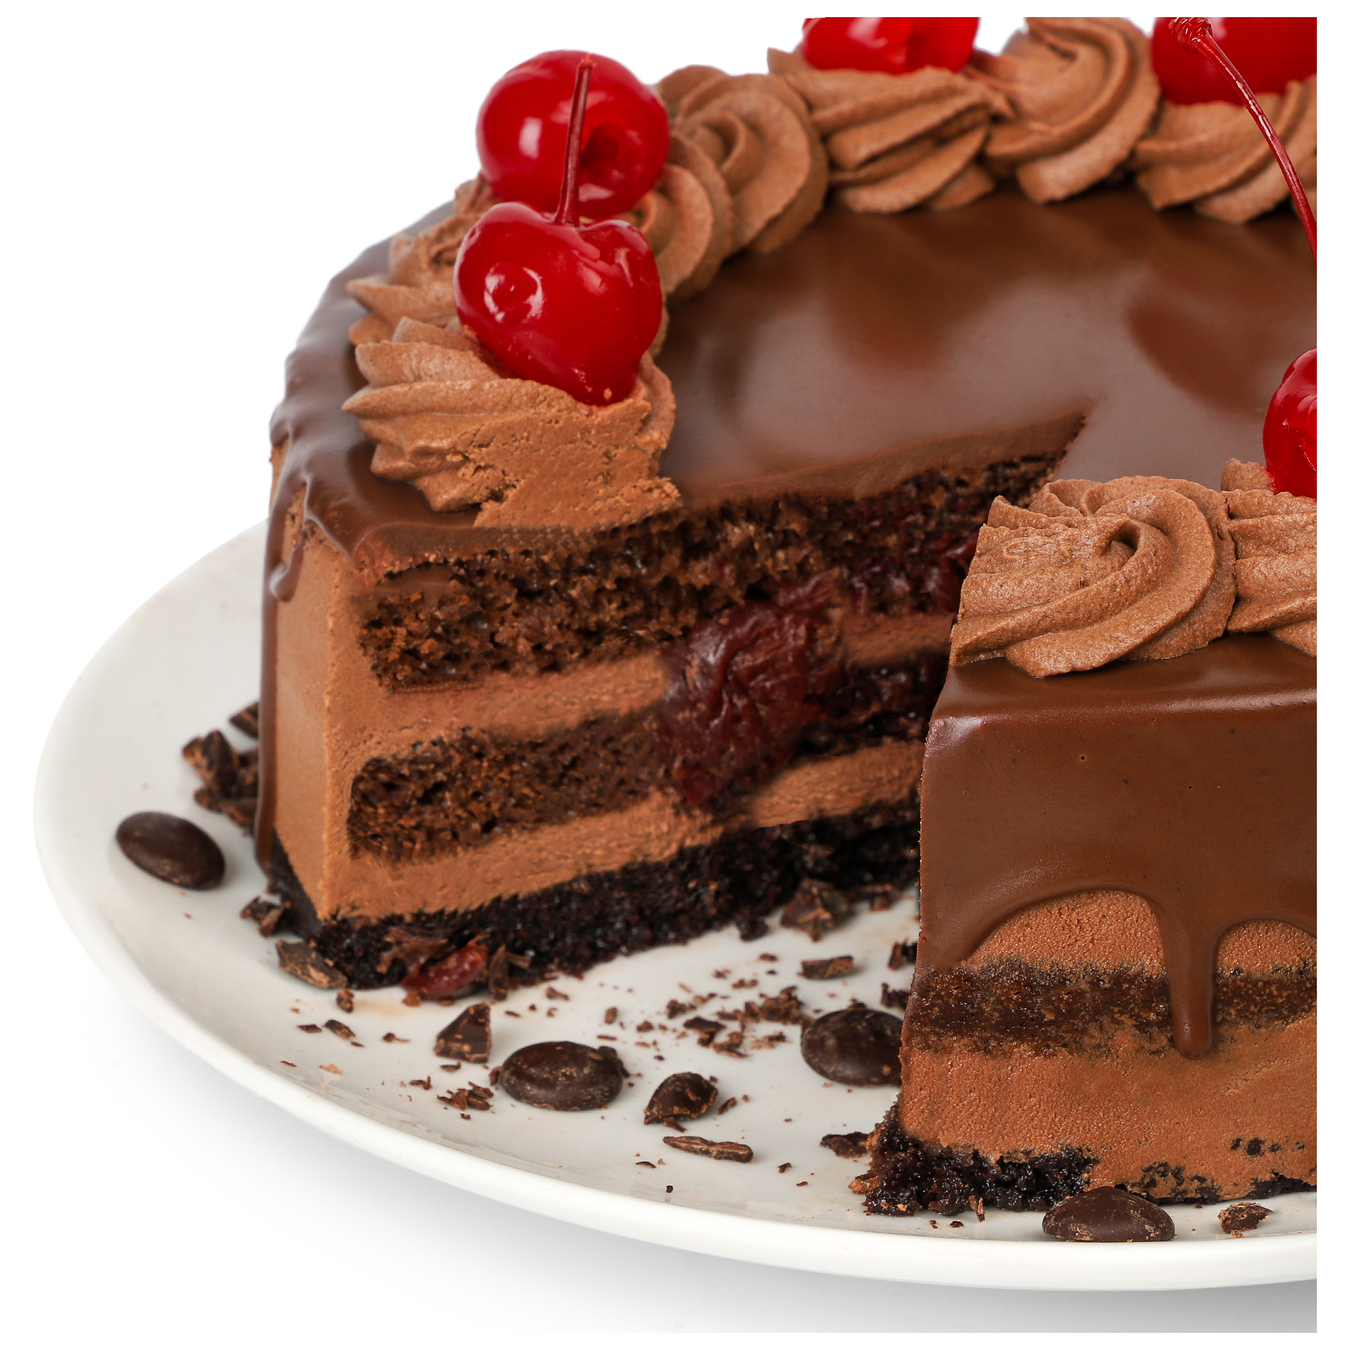 Chocolate cake with cherries 2